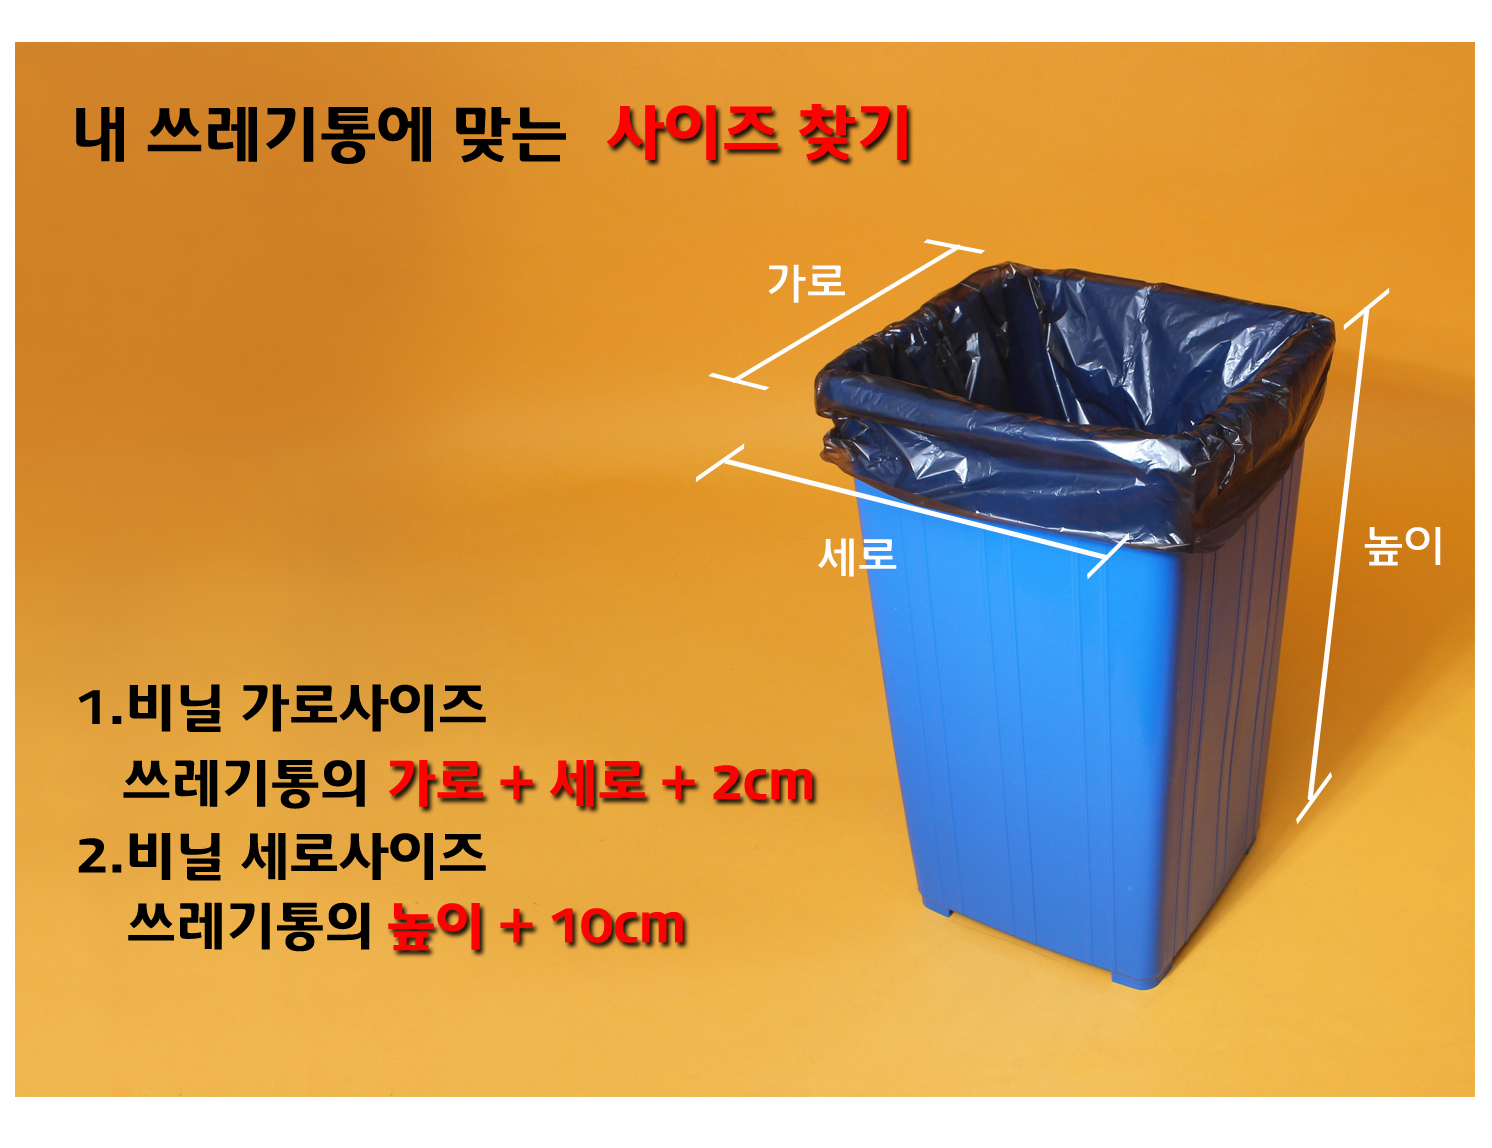 사각 파란색 쓰레기통에 비닐봉투가 씌워져있다. 가로 세로 높이 사이즈 표시선이 보이고 쓰레기봉투의 사이즈를 선택할 수 있는 방법이 잘 나타나있는 이미지가 보인다.